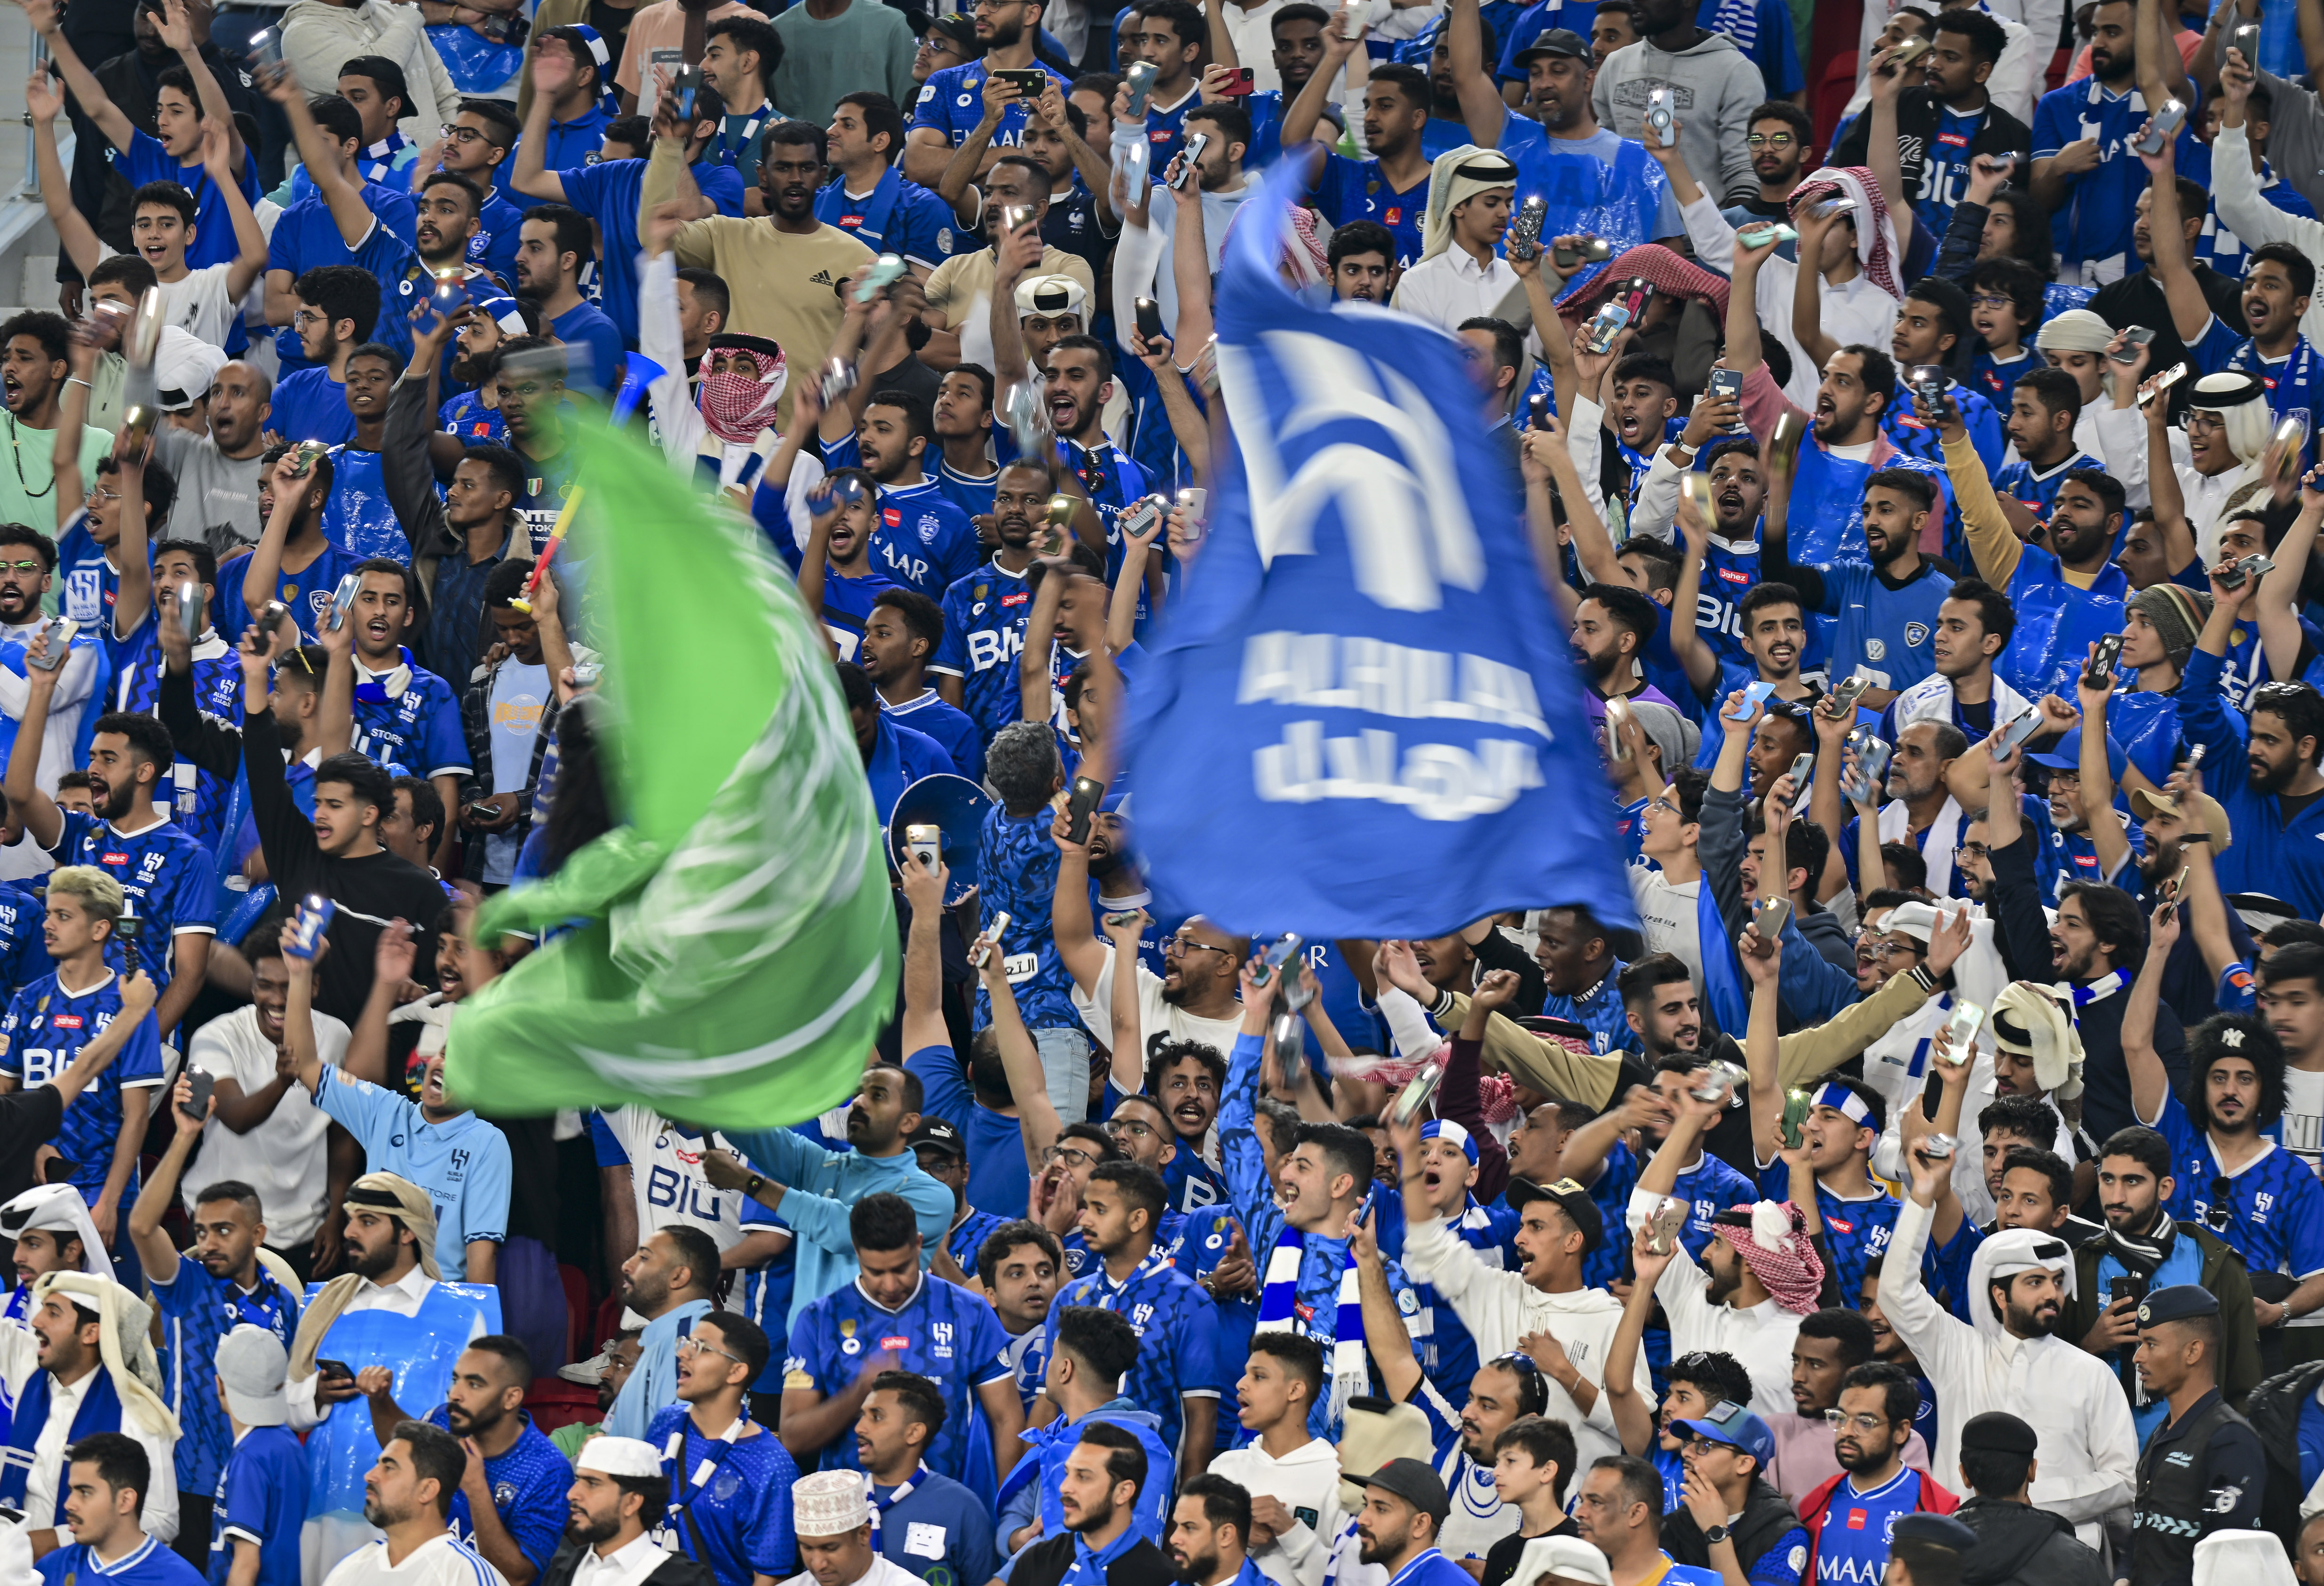 السعودية تطلق خطة لخصخصة الأندية الرياضية مع انتزاع دوري كرة القدم لنجوم العالم